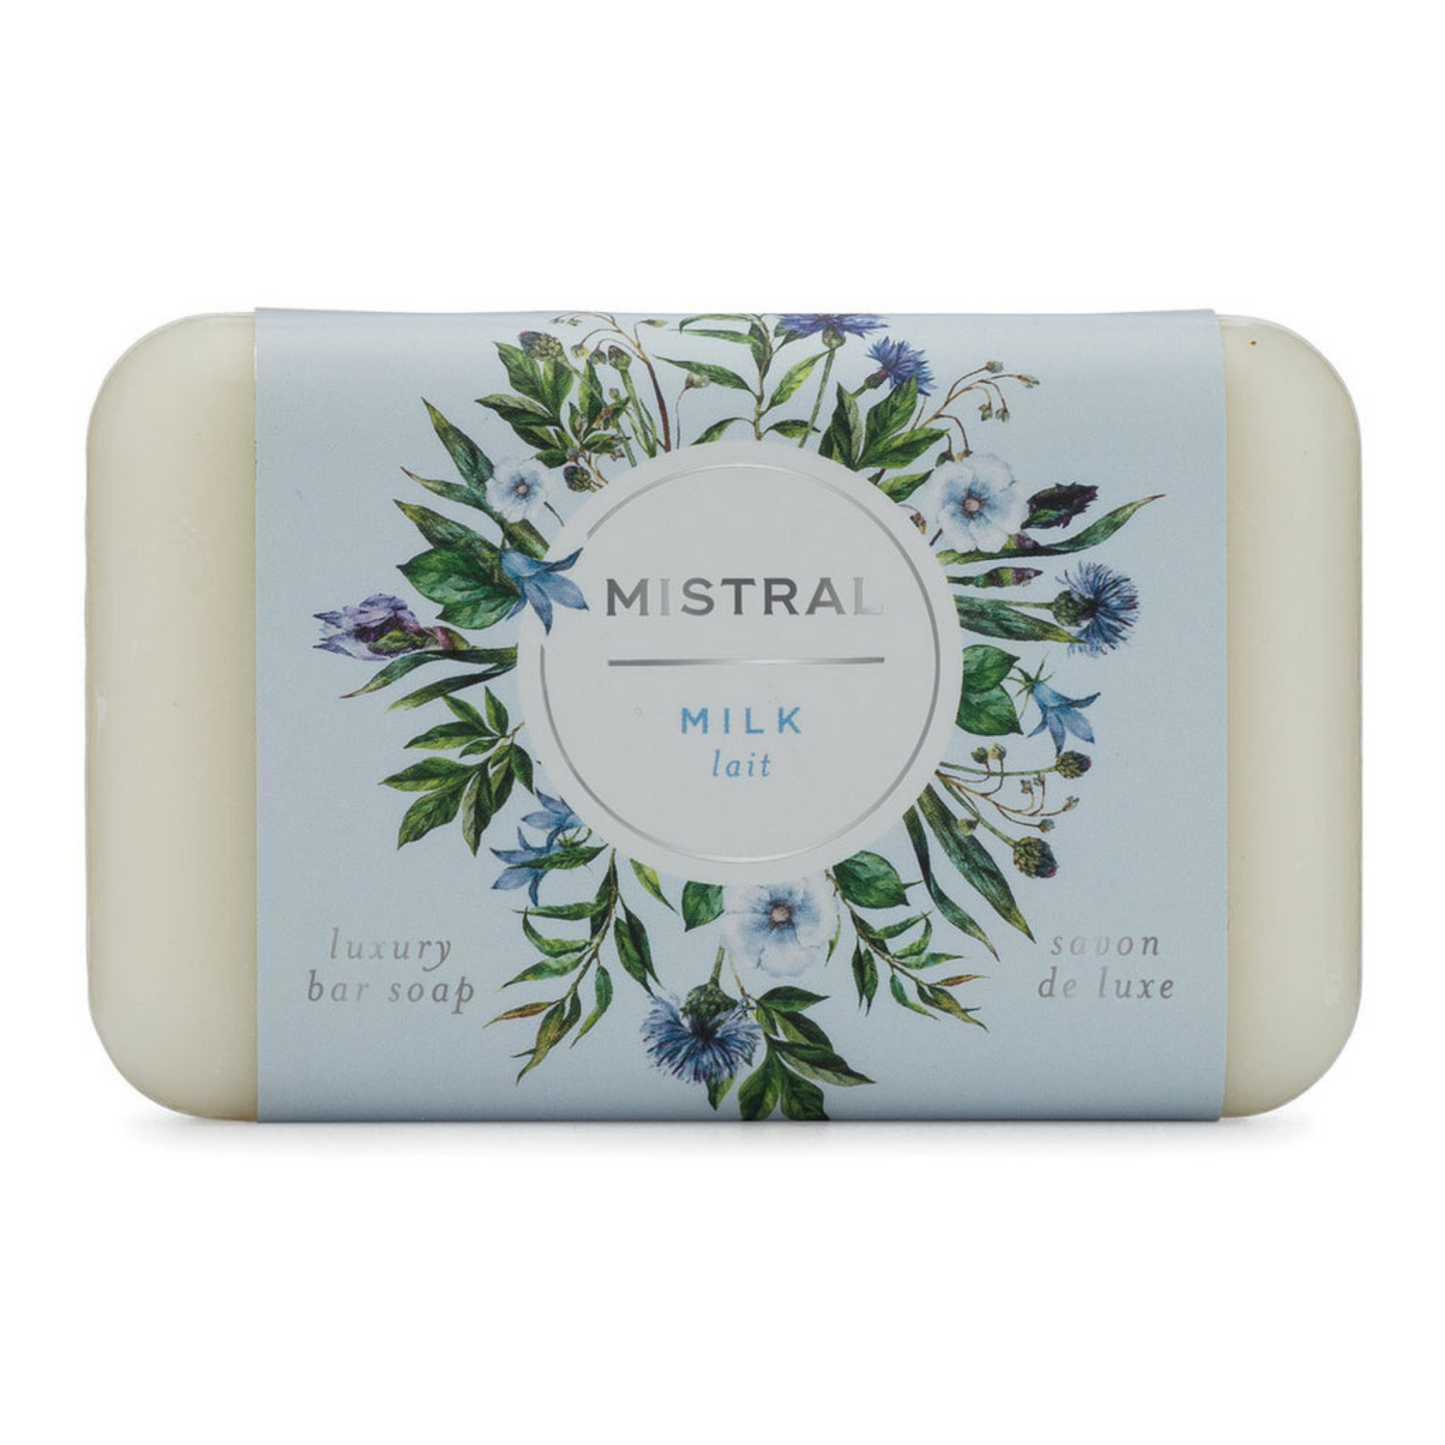 Primary image of Milk Soap